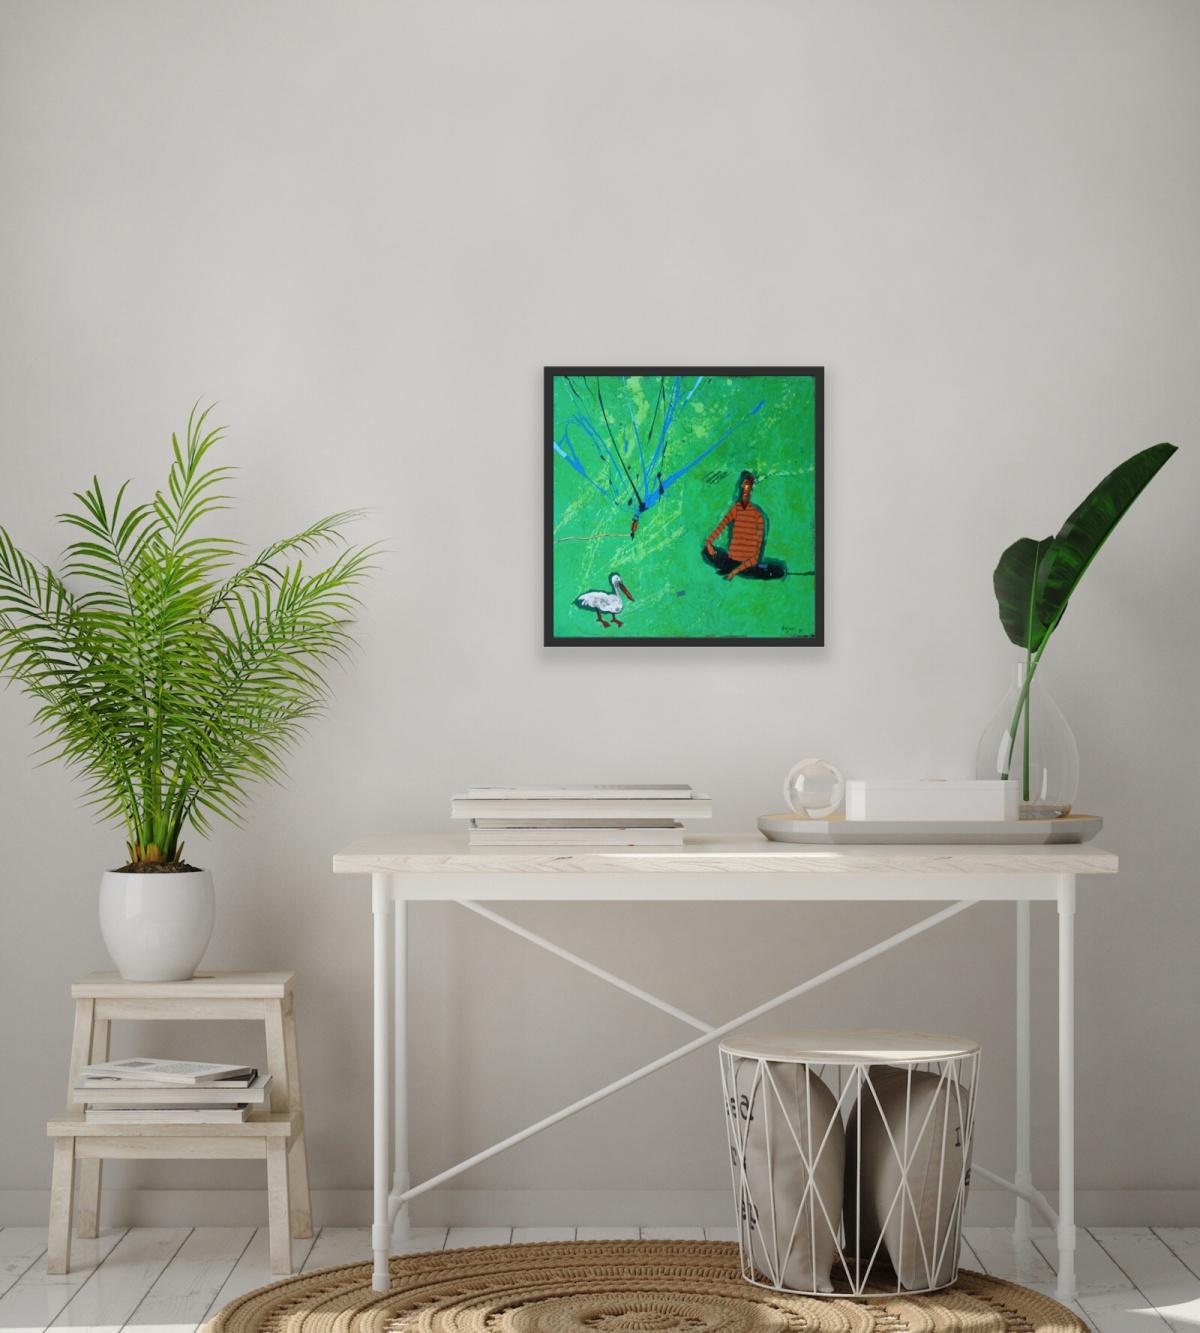 Retour avec un oiseau - Peinture figurative à l'acrylique, paysage, vert vibrant - Vert Figurative Painting par Rafał Bojdys